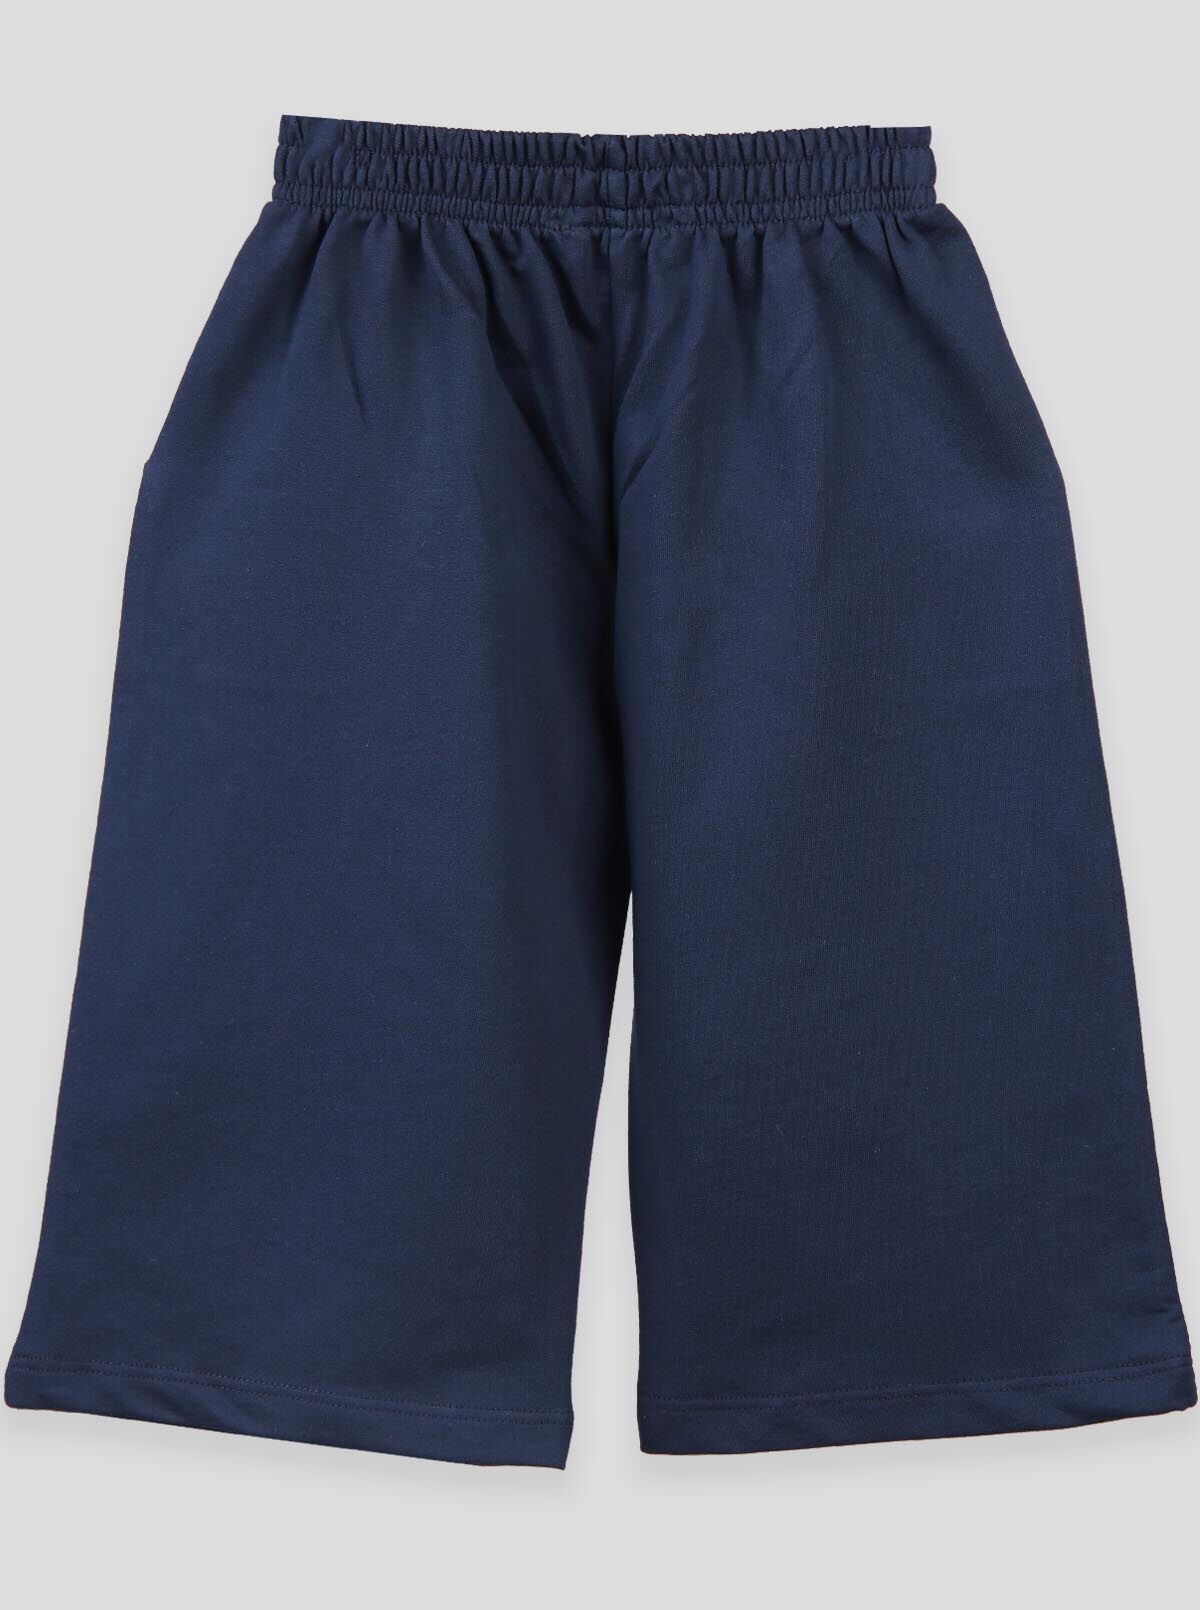 Трикотажные шорты для мальчика Breeze синие 14023 - фото